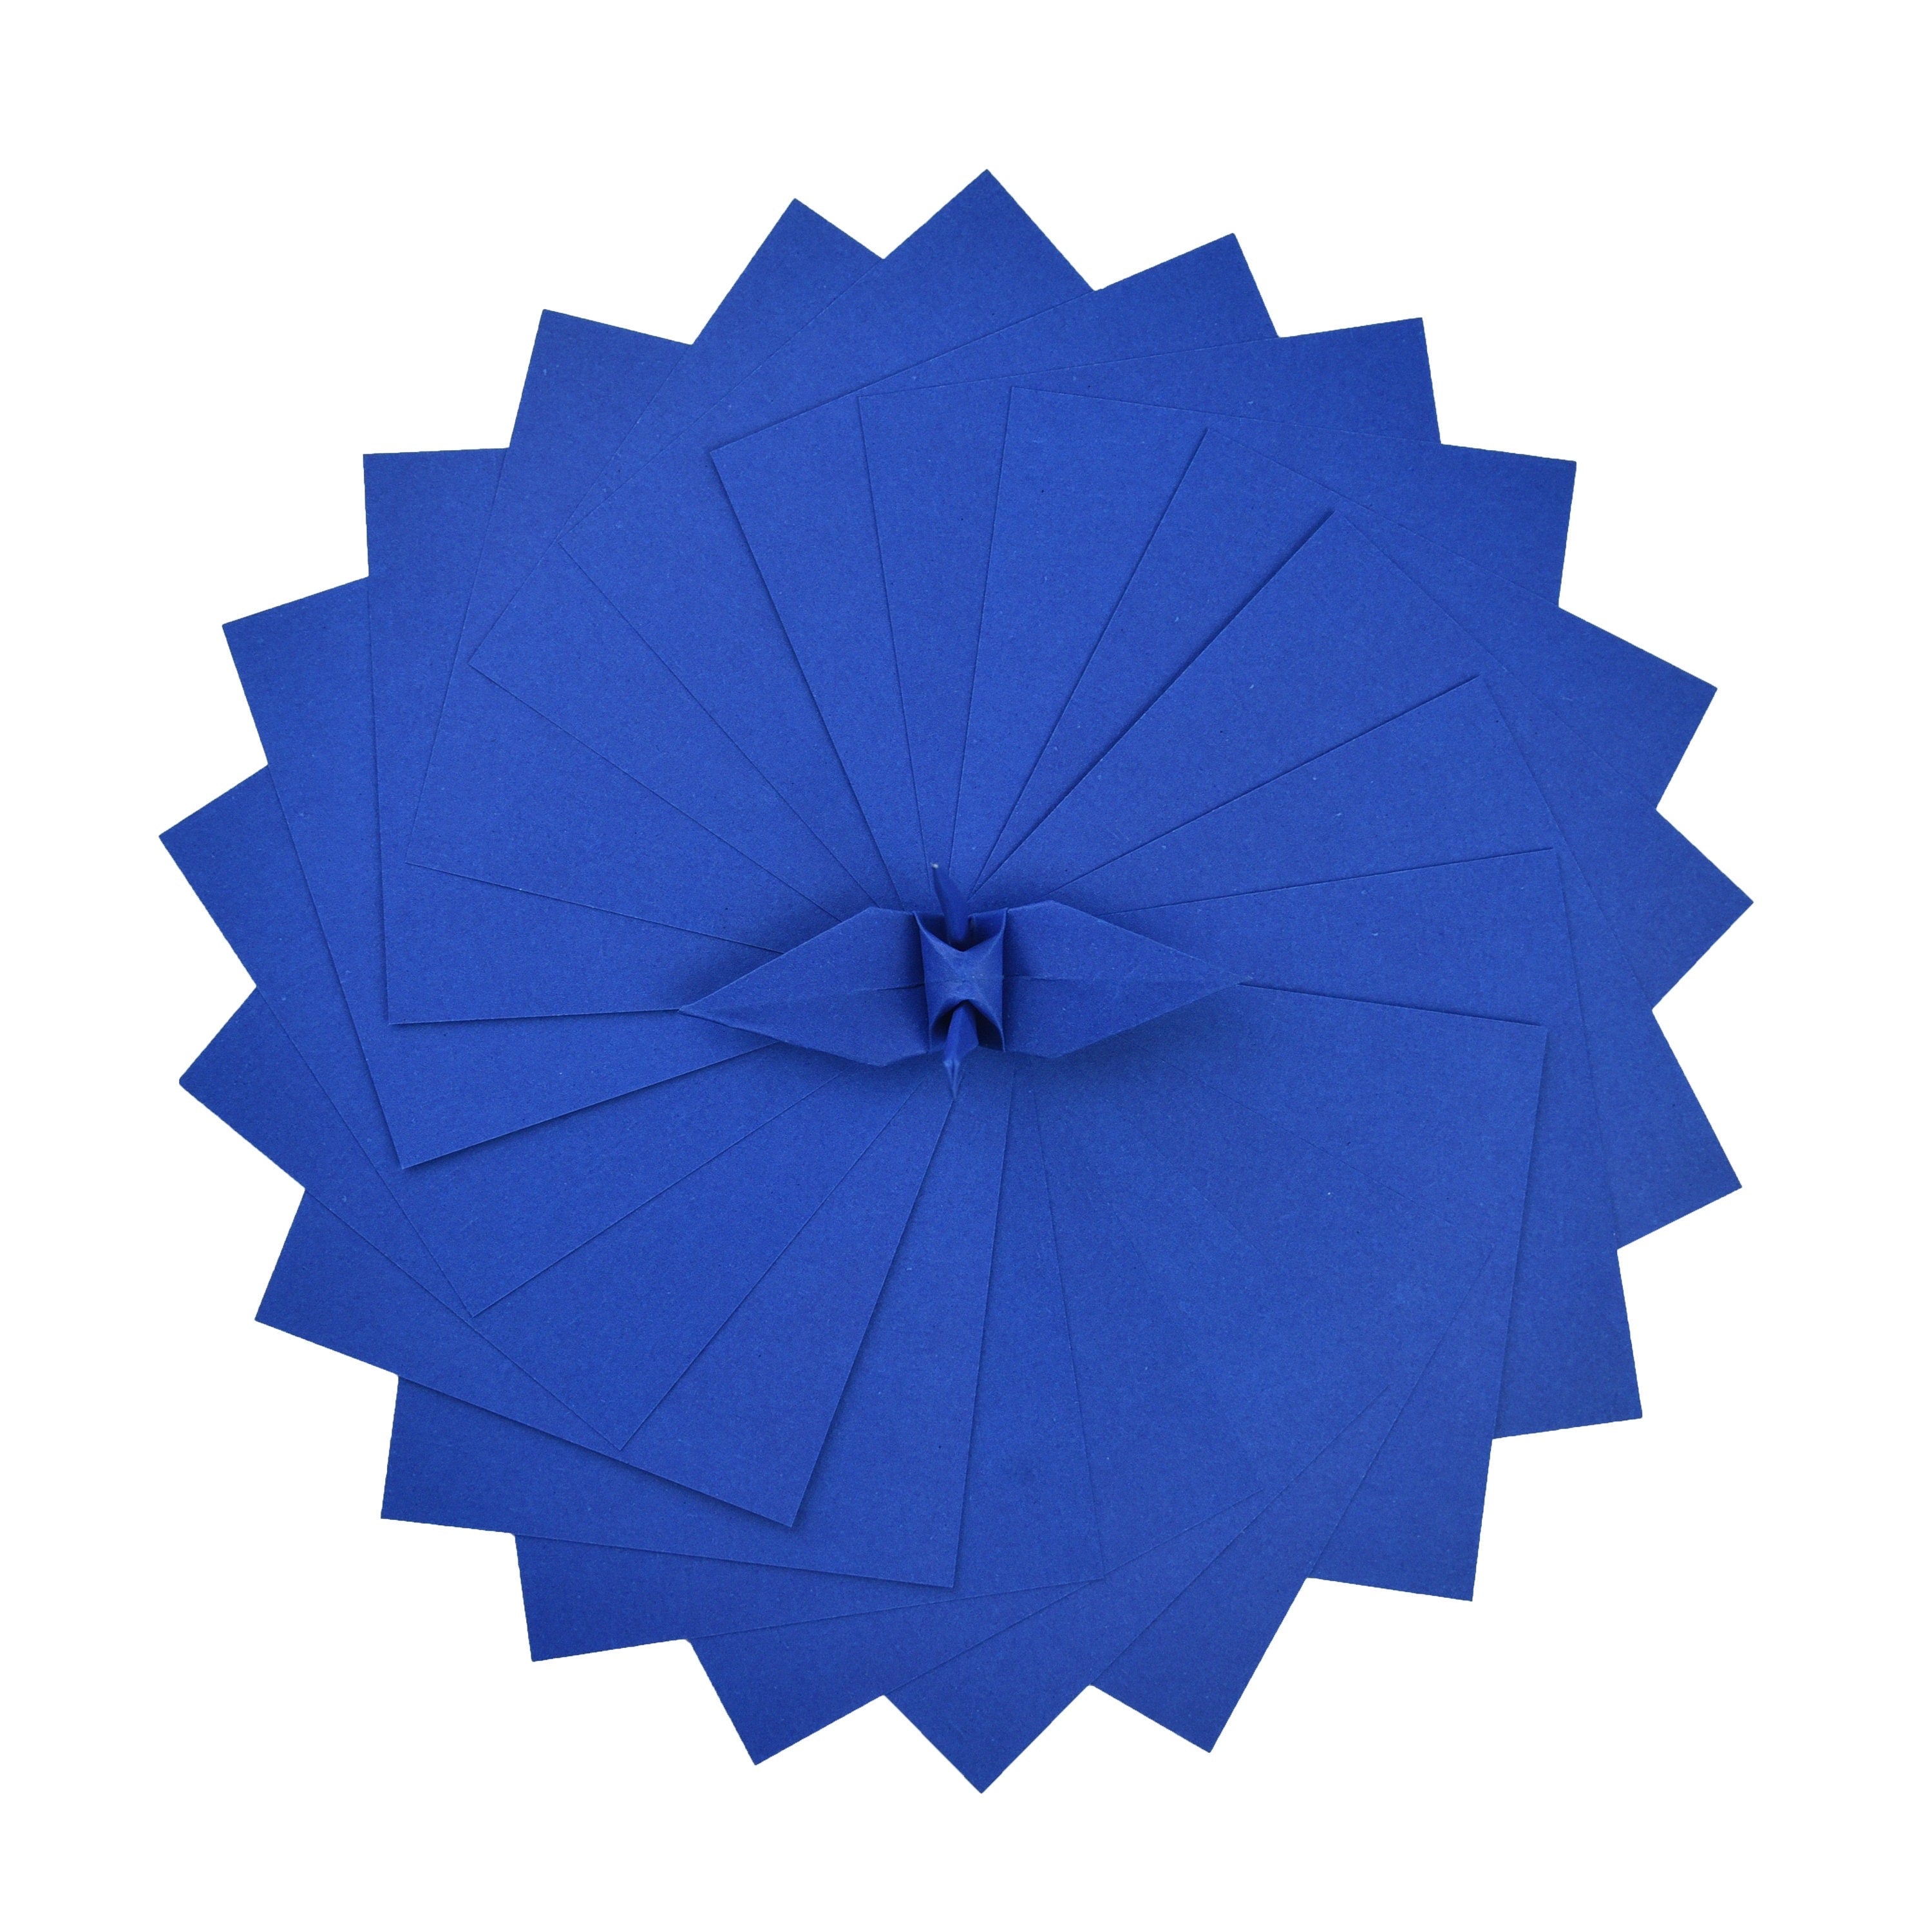 100 fogli di carta origami - 6x6 pollici - Confezione di carta quadrata per piegare, gru origami e decorazioni - S20